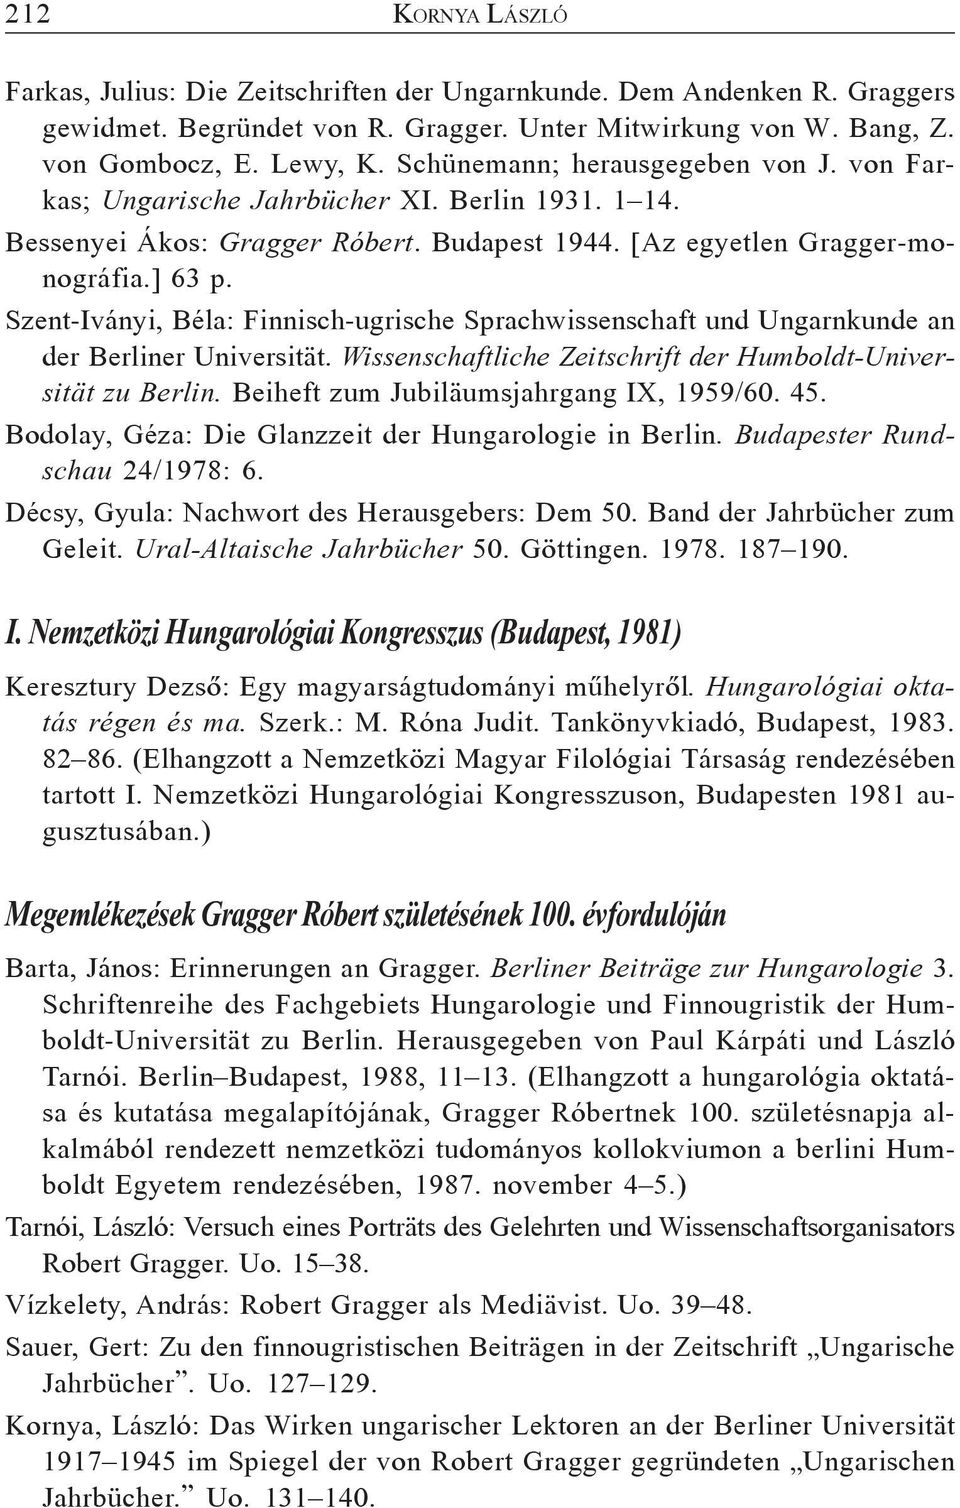 Szent-Iványi, Béla: Finnisch-ugrische Sprachwissenschaft und Ungarnkunde an der Berliner Universität. Wissenschaftliche Zeitschrift der Humboldt-Universität zu Berlin.